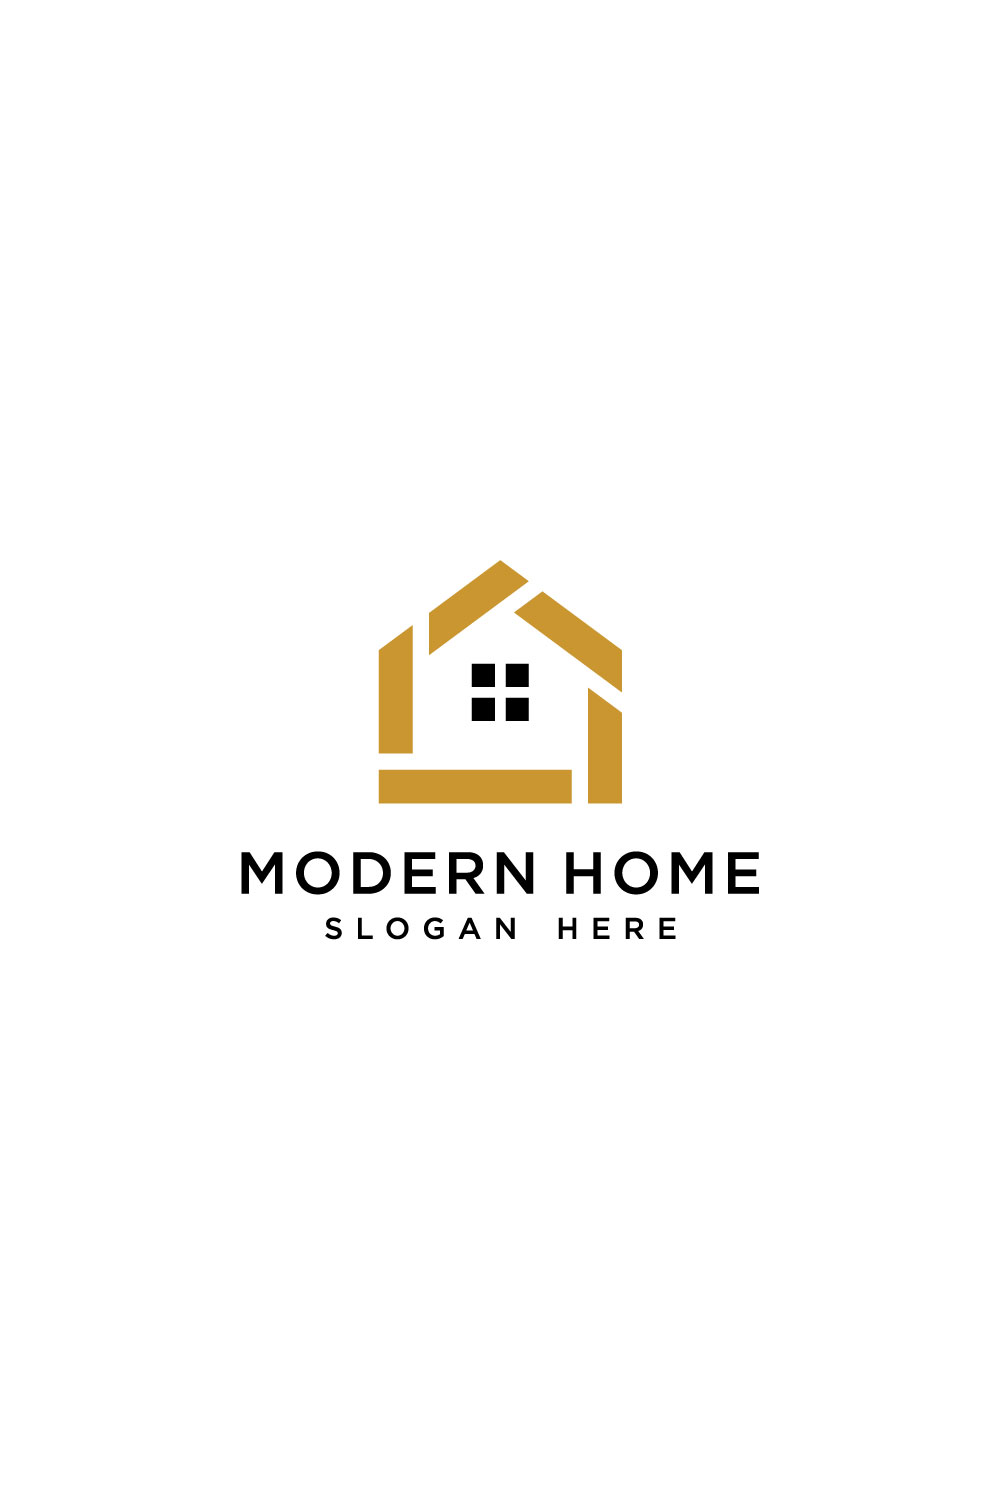 Modern Home Logo Vector Design Pinterest.